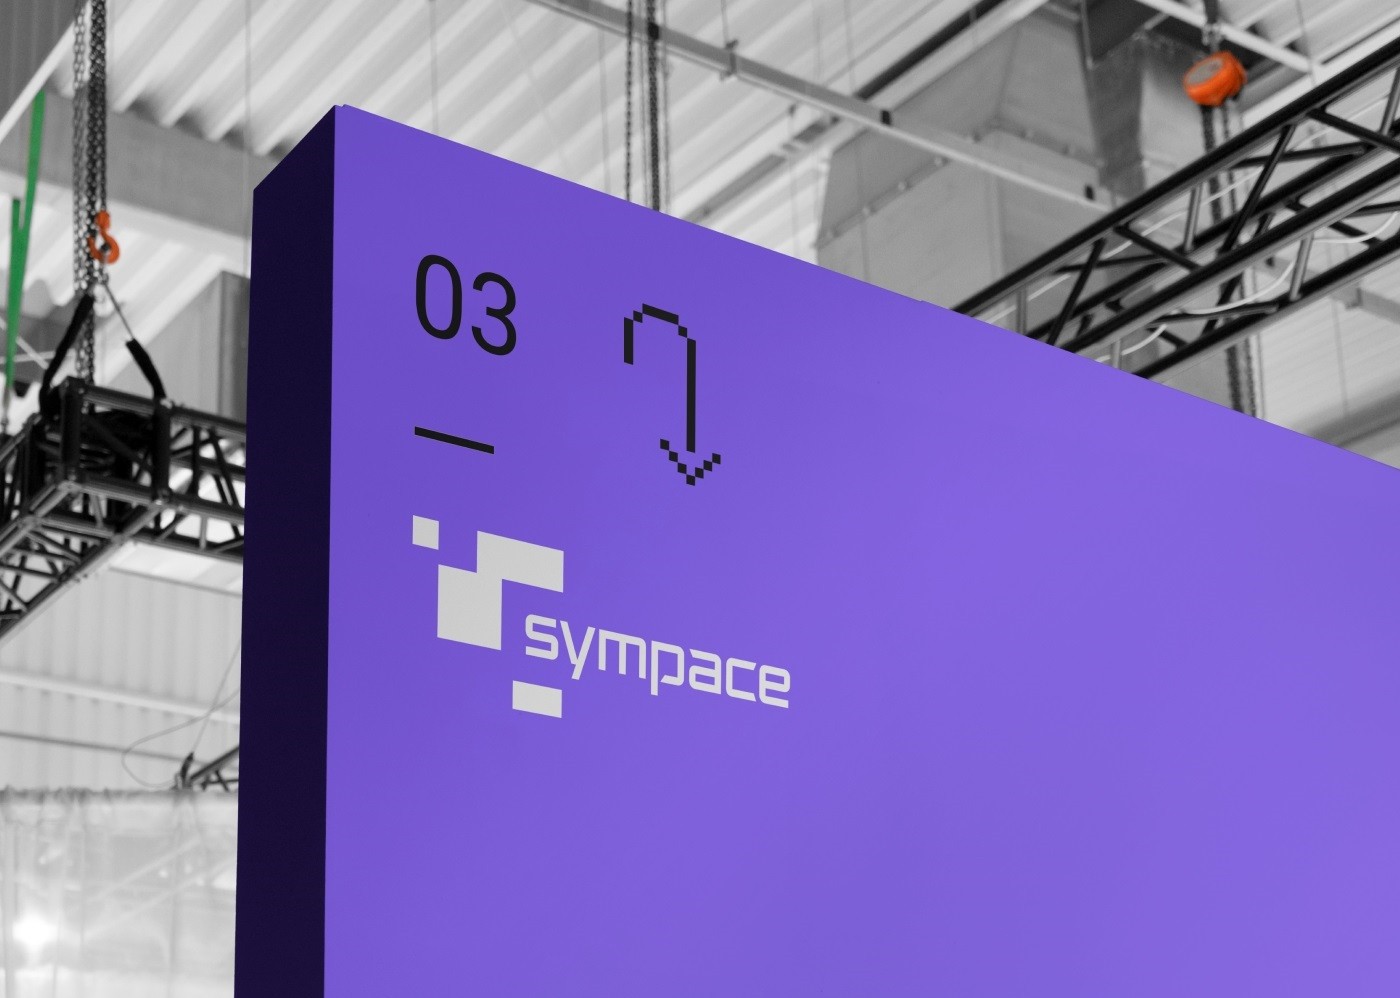 Фото №14: Sympace - Разработка логотипа и создание бренда в студии брендинга Lobster Agency